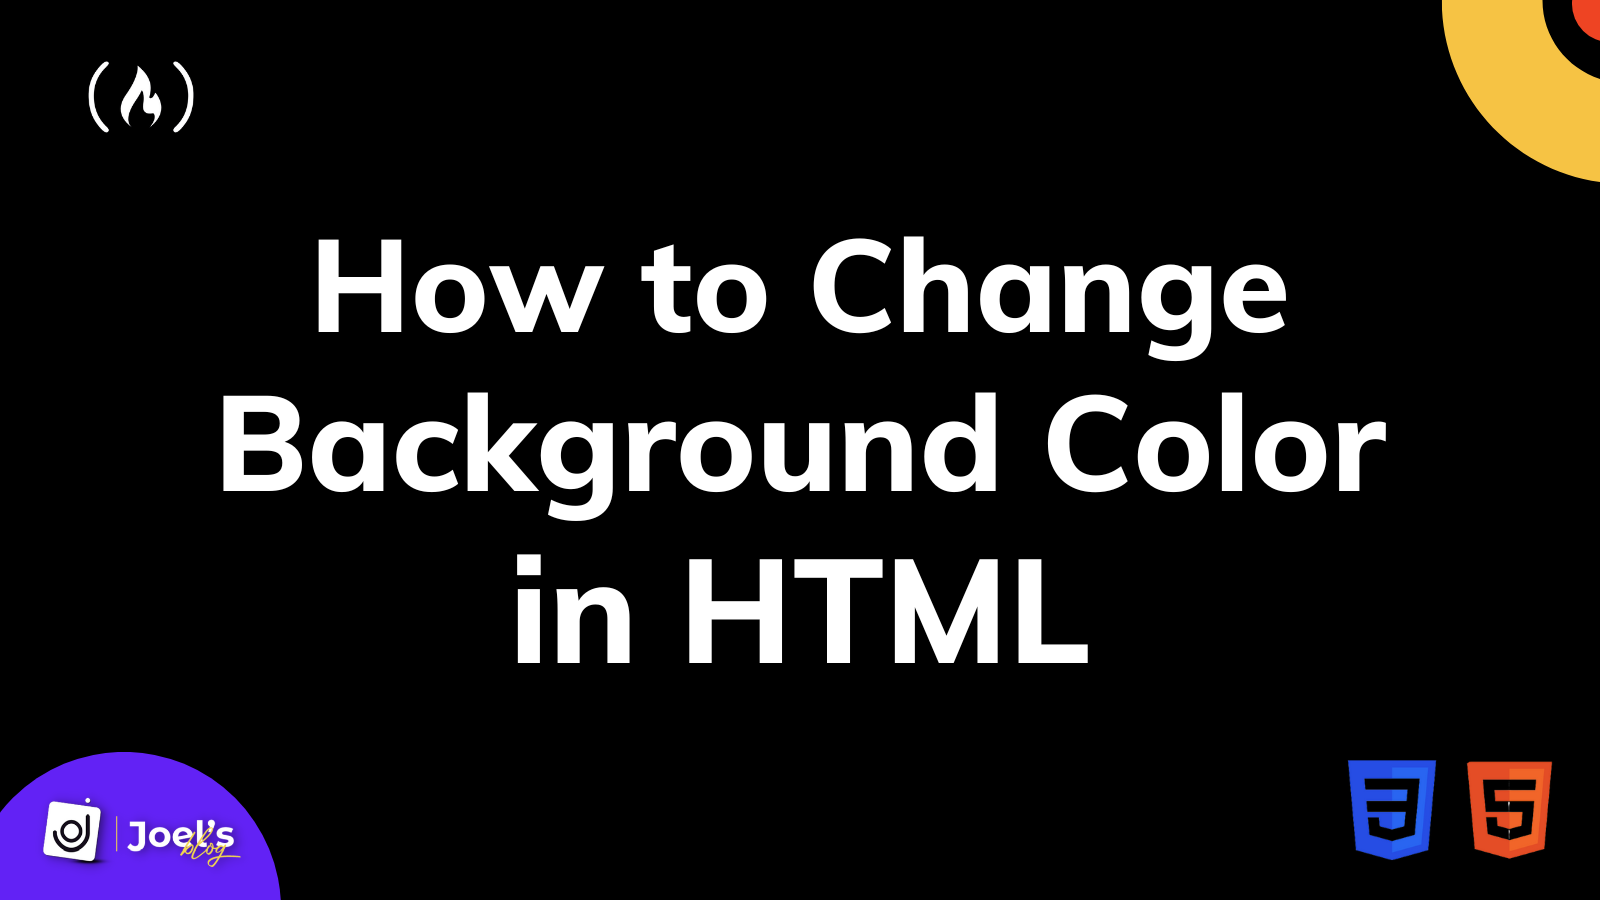 Hãy nắm bắt kiến thức cơ bản về HTML để thay đổi màu nền trên trang web của mình một cách dễ dàng. Hãy xem ngay hướng dẫn và thực hành, bạn sẽ ngạc nhiên với kết quả. Trang web của bạn sẽ trở nên sinh động và thú vị hơn nhờ sự kết hợp tinh tế giữa màu sắc và nội dung.